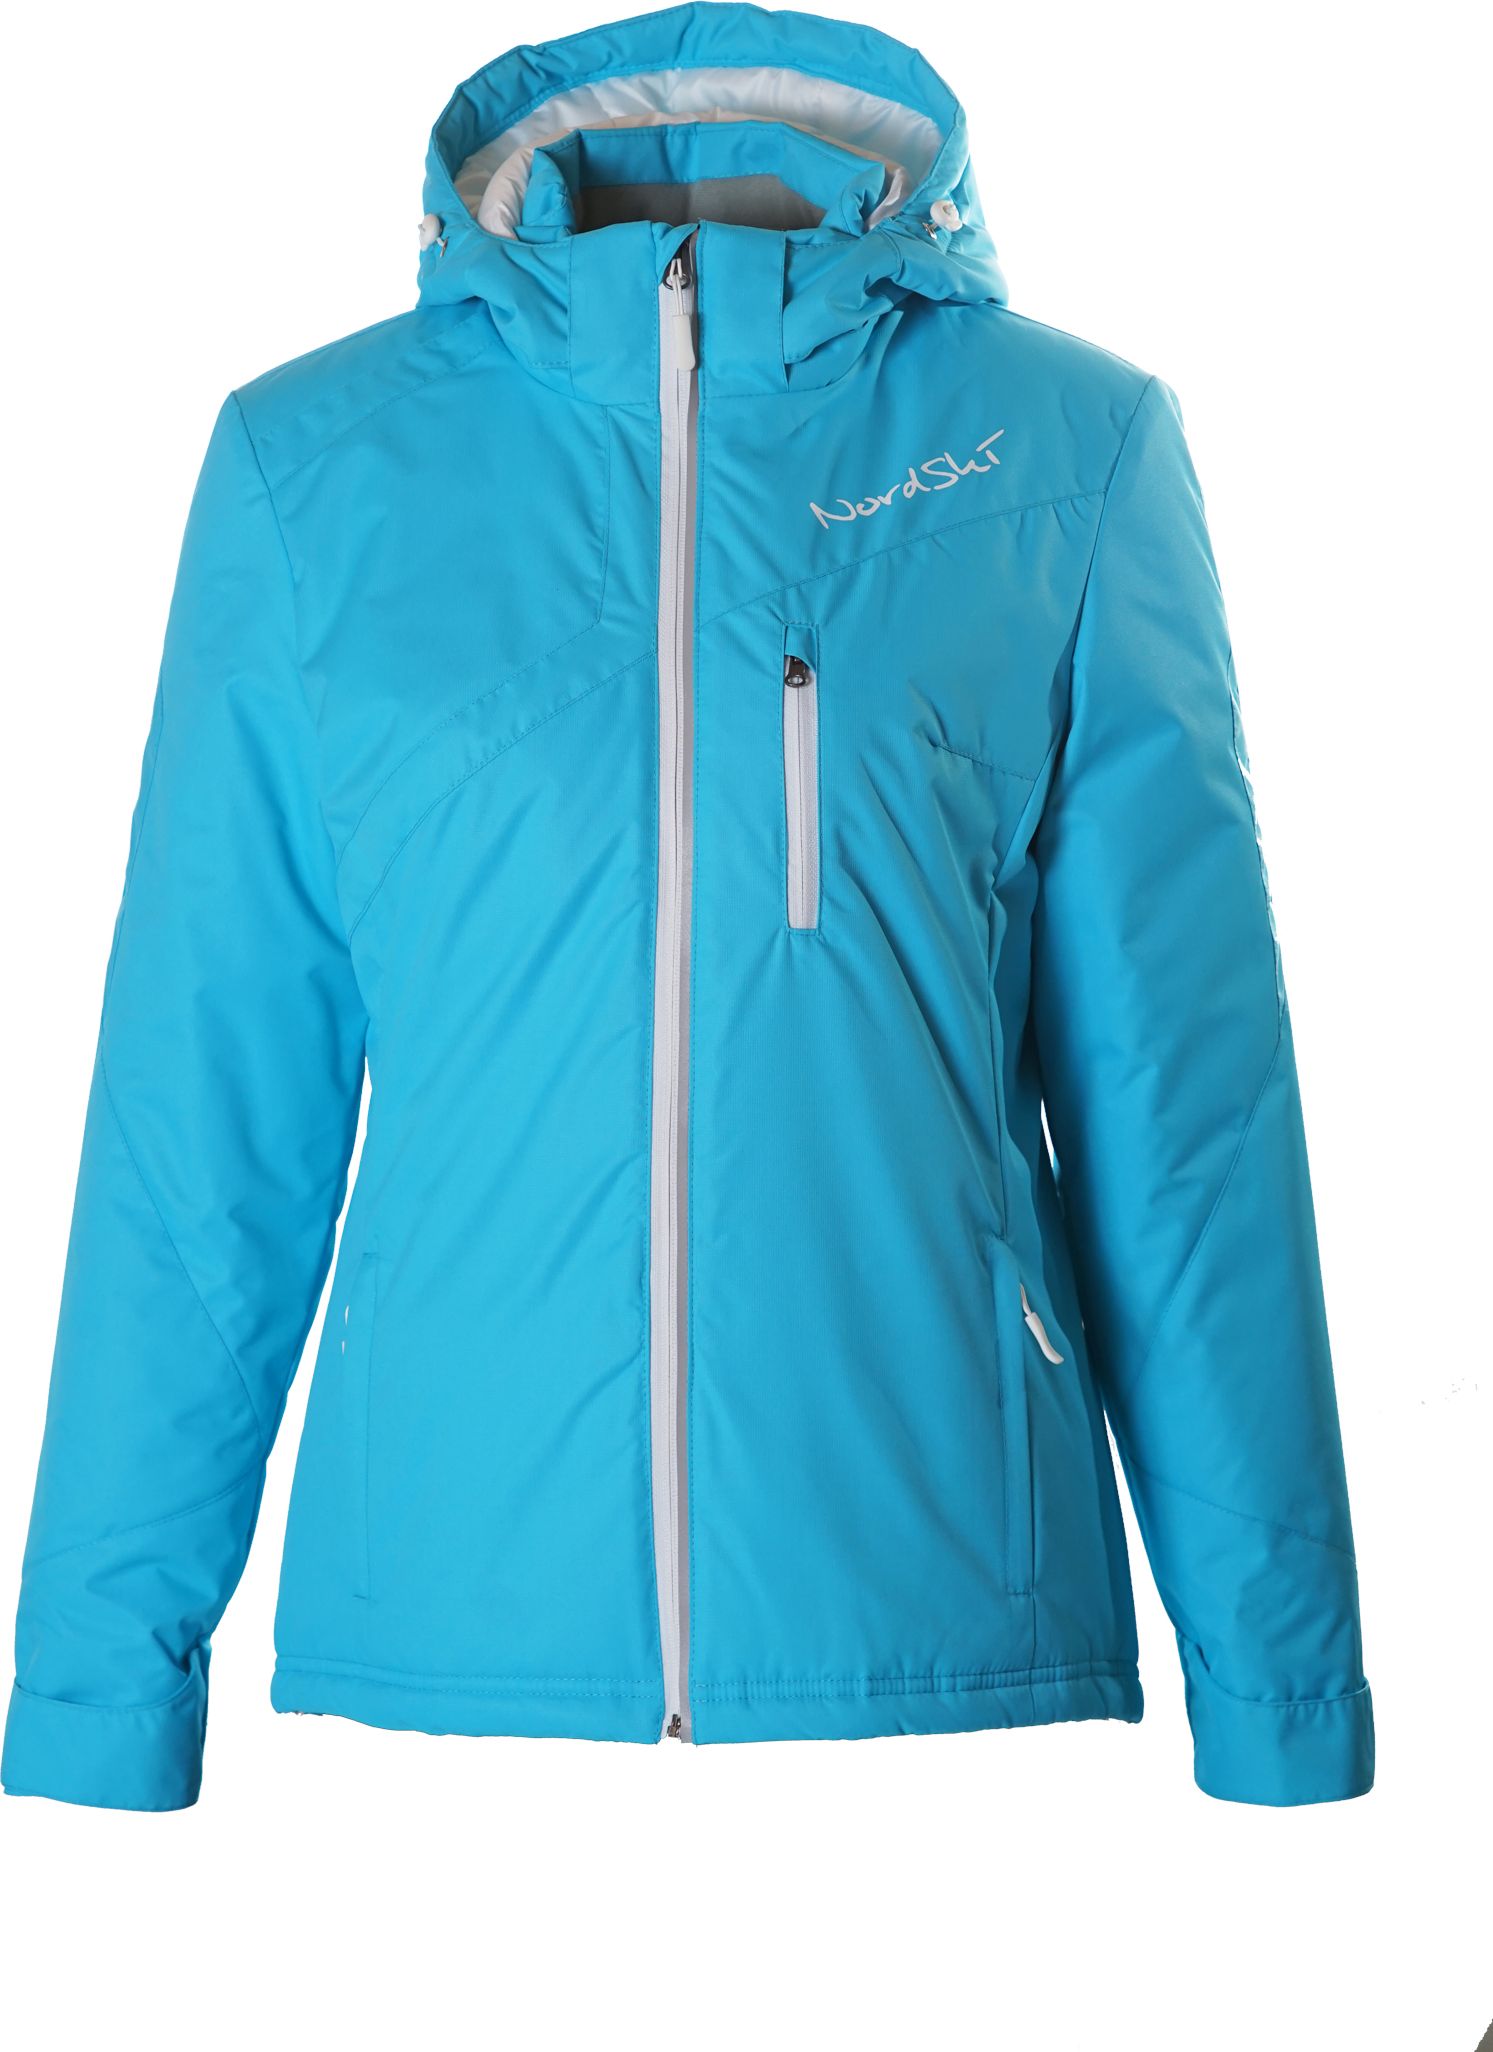 Спортмастер зима. Нордски премиум куртка. Куртка Nordski Premium Active. Лыжная утеплённая куртка нордски. Голубой лыжный костюм женский в спортмастере.